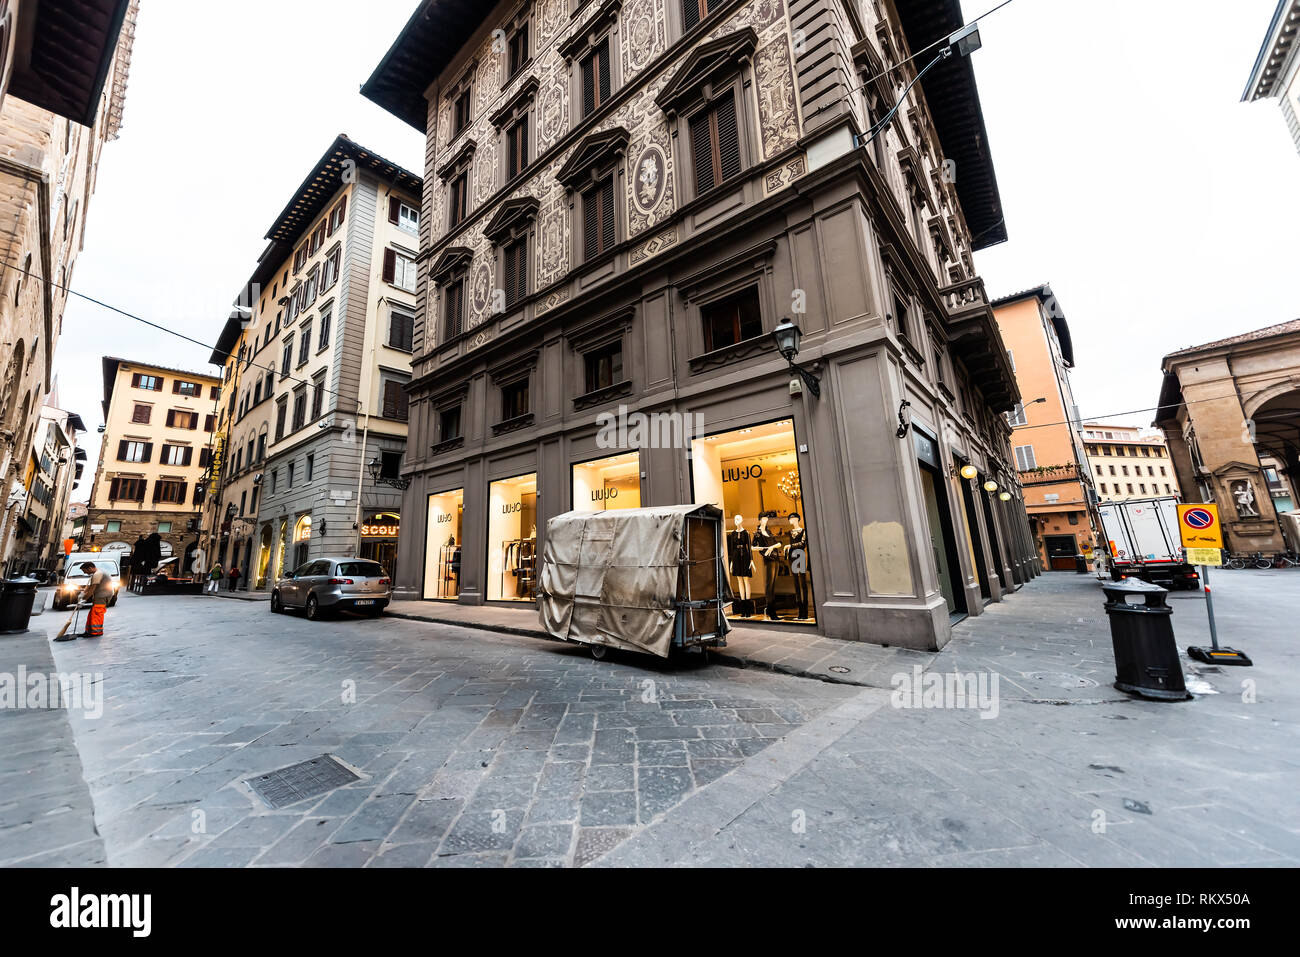 Firenze, Italia - 31 agosto 2018: Liu Jo storefront facciata di edificio di shop store in Firenze, città italiana con segno e architettura in mattinata Foto Stock